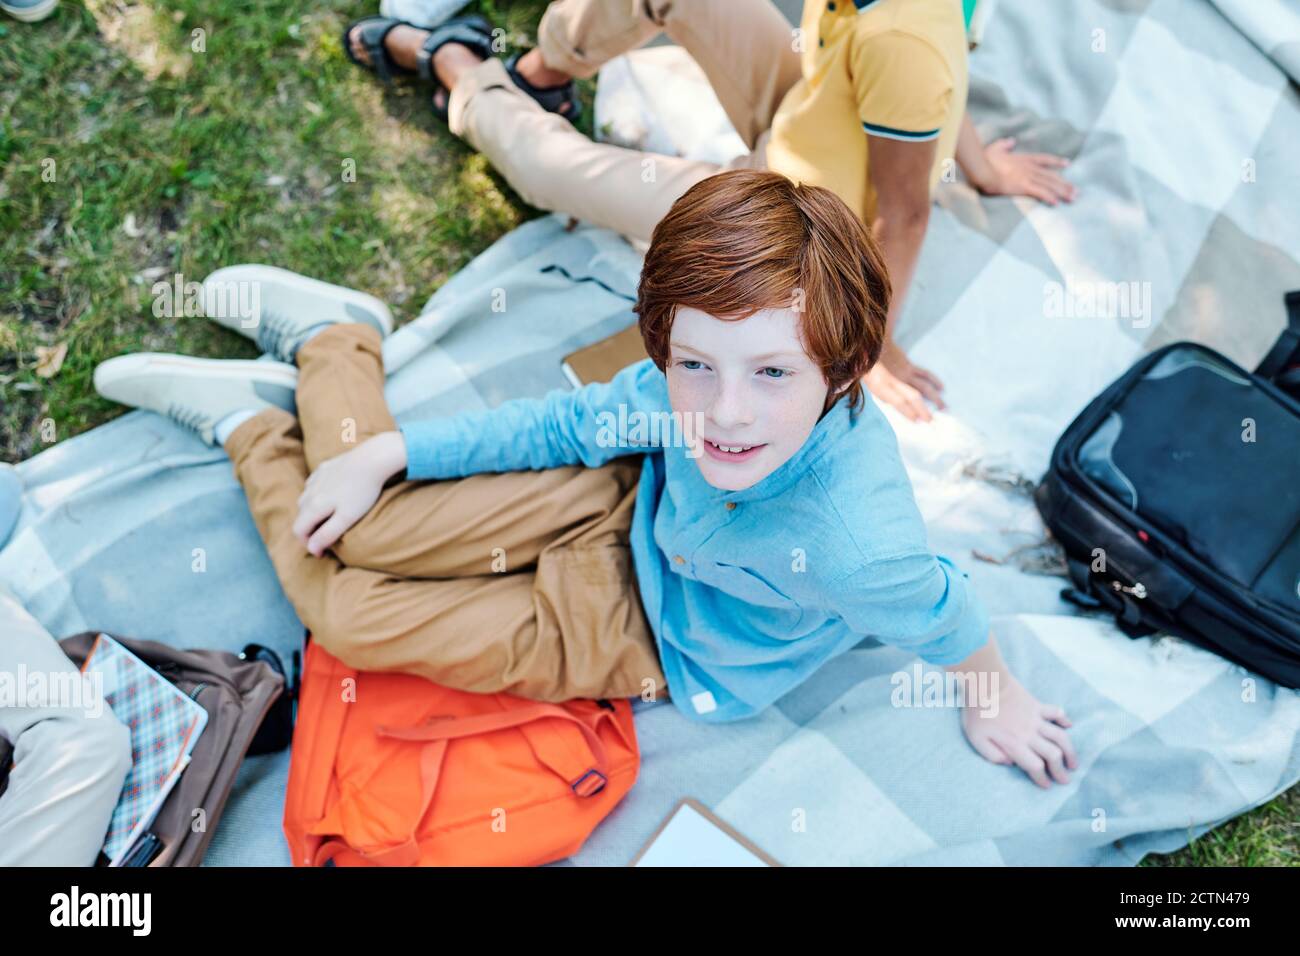 Vue en grand angle d'un écolier souriant à tête rouge dans une chemise bleue assis avec une sacoche sur une couverture et passer du temps avec des amis au pique-nique après l'école Banque D'Images